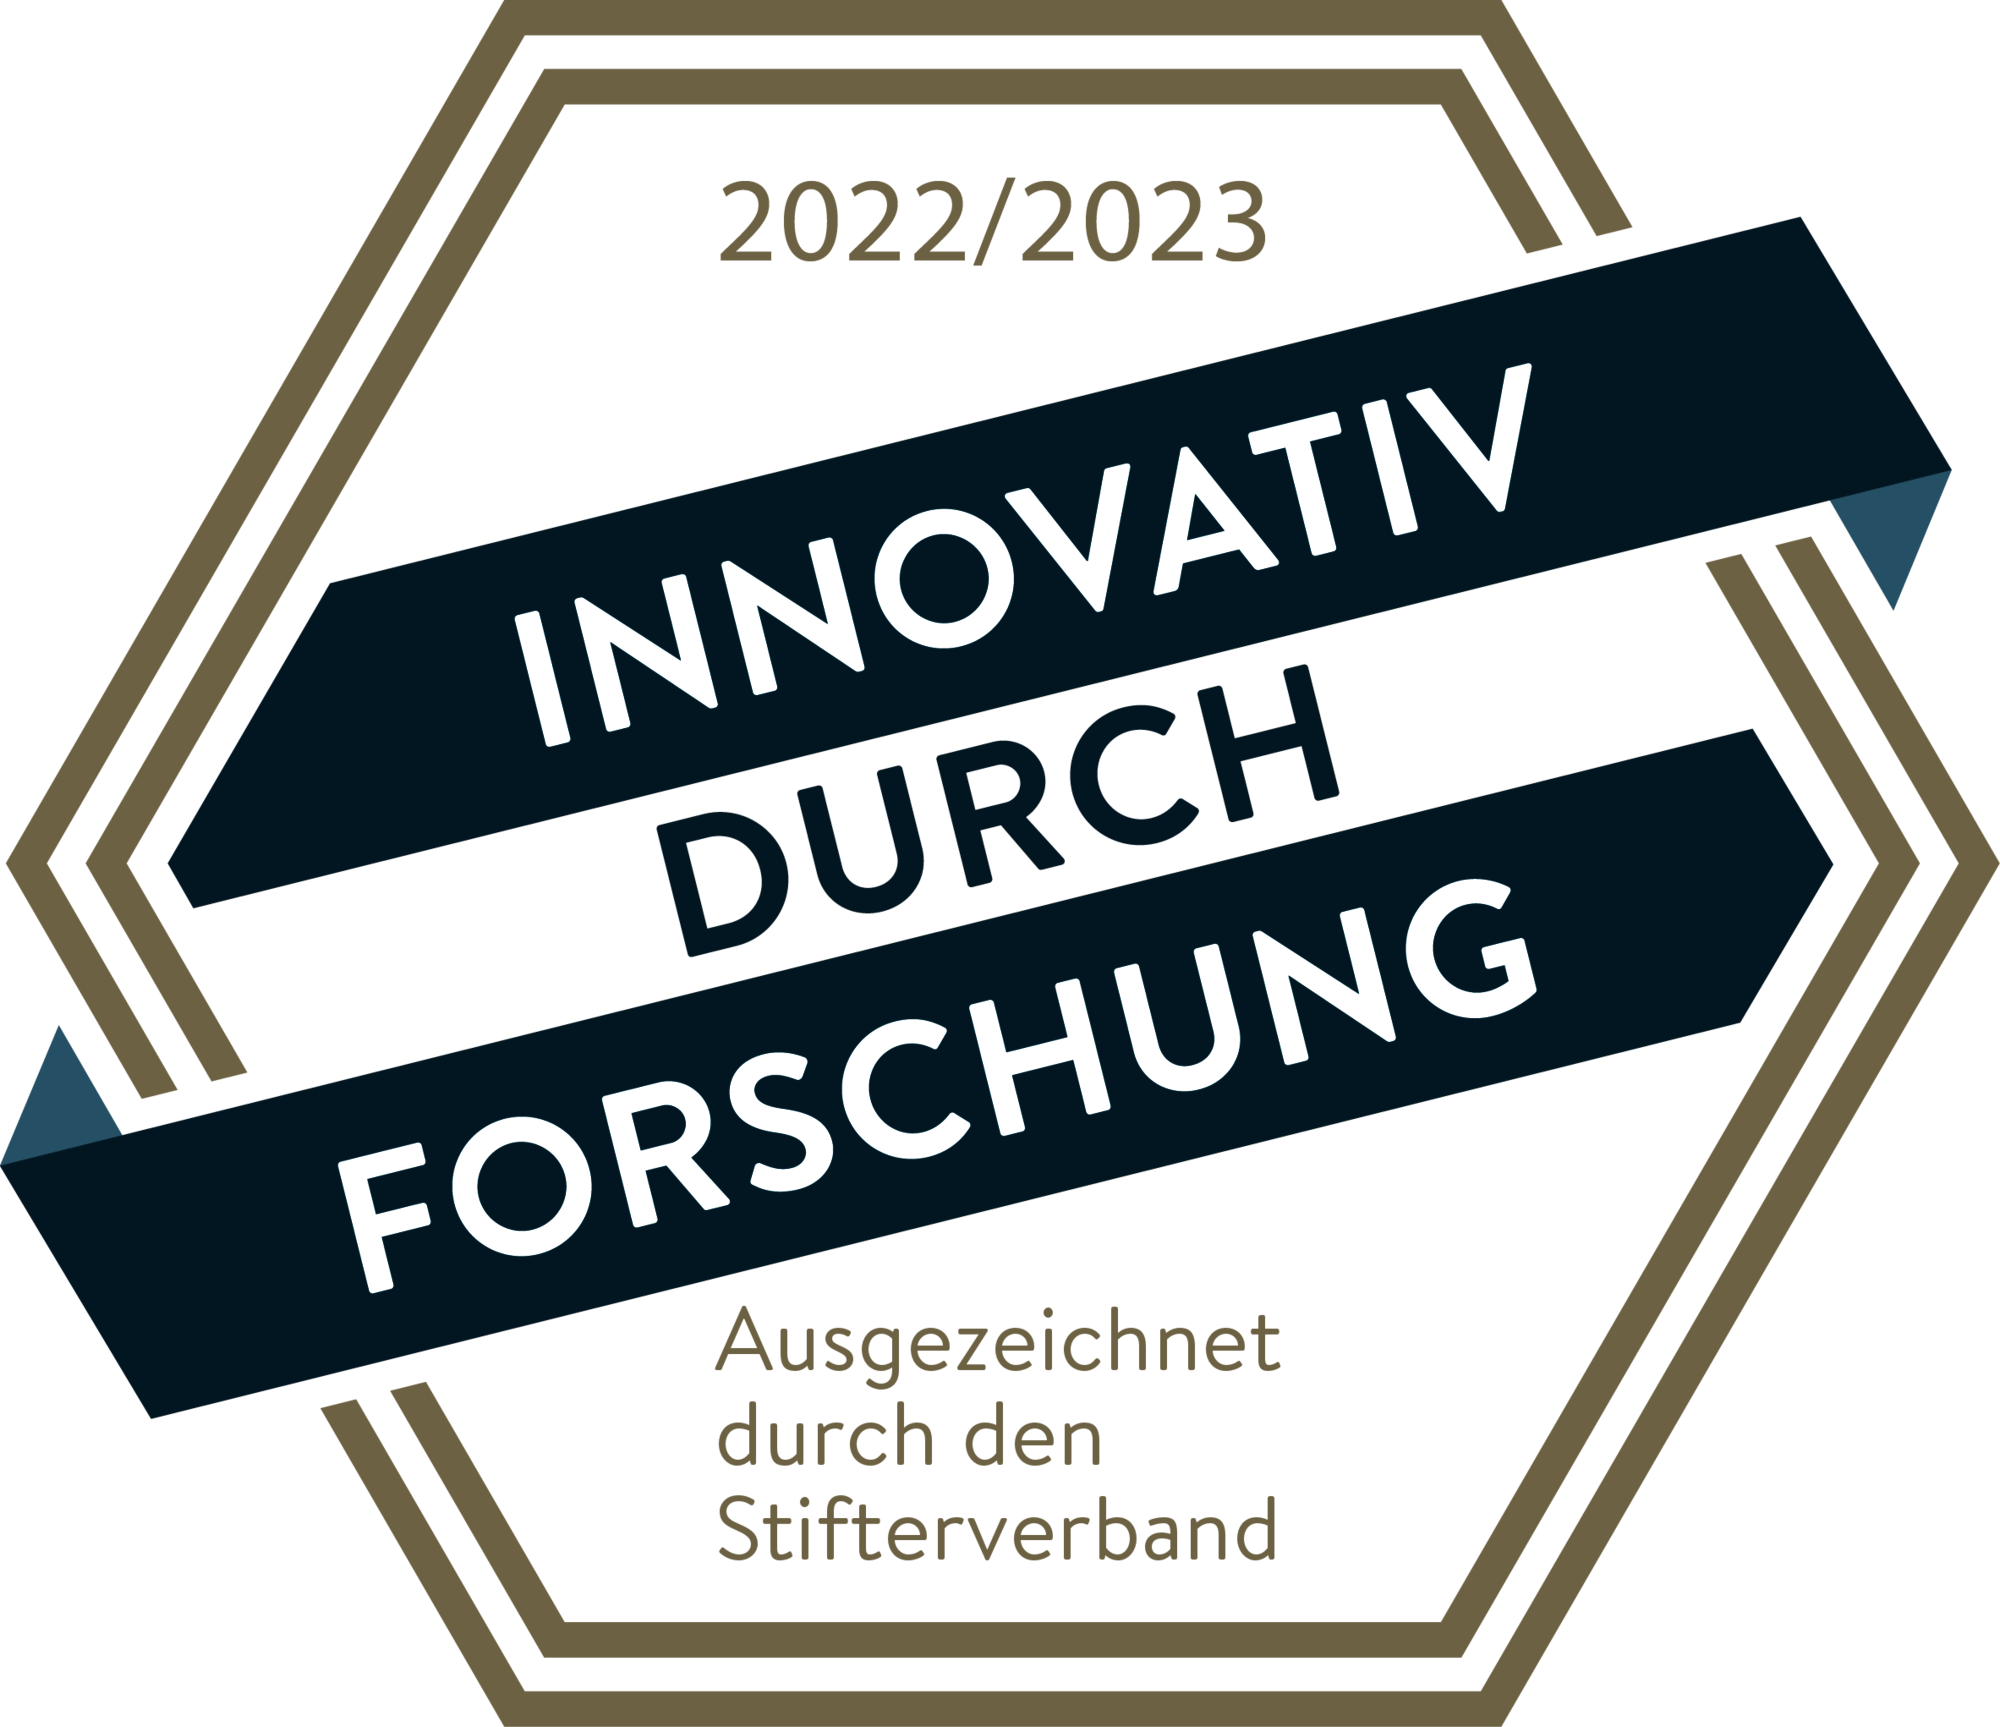 Forschung_und_Entwicklung_2022_Stifterverband_ll.png